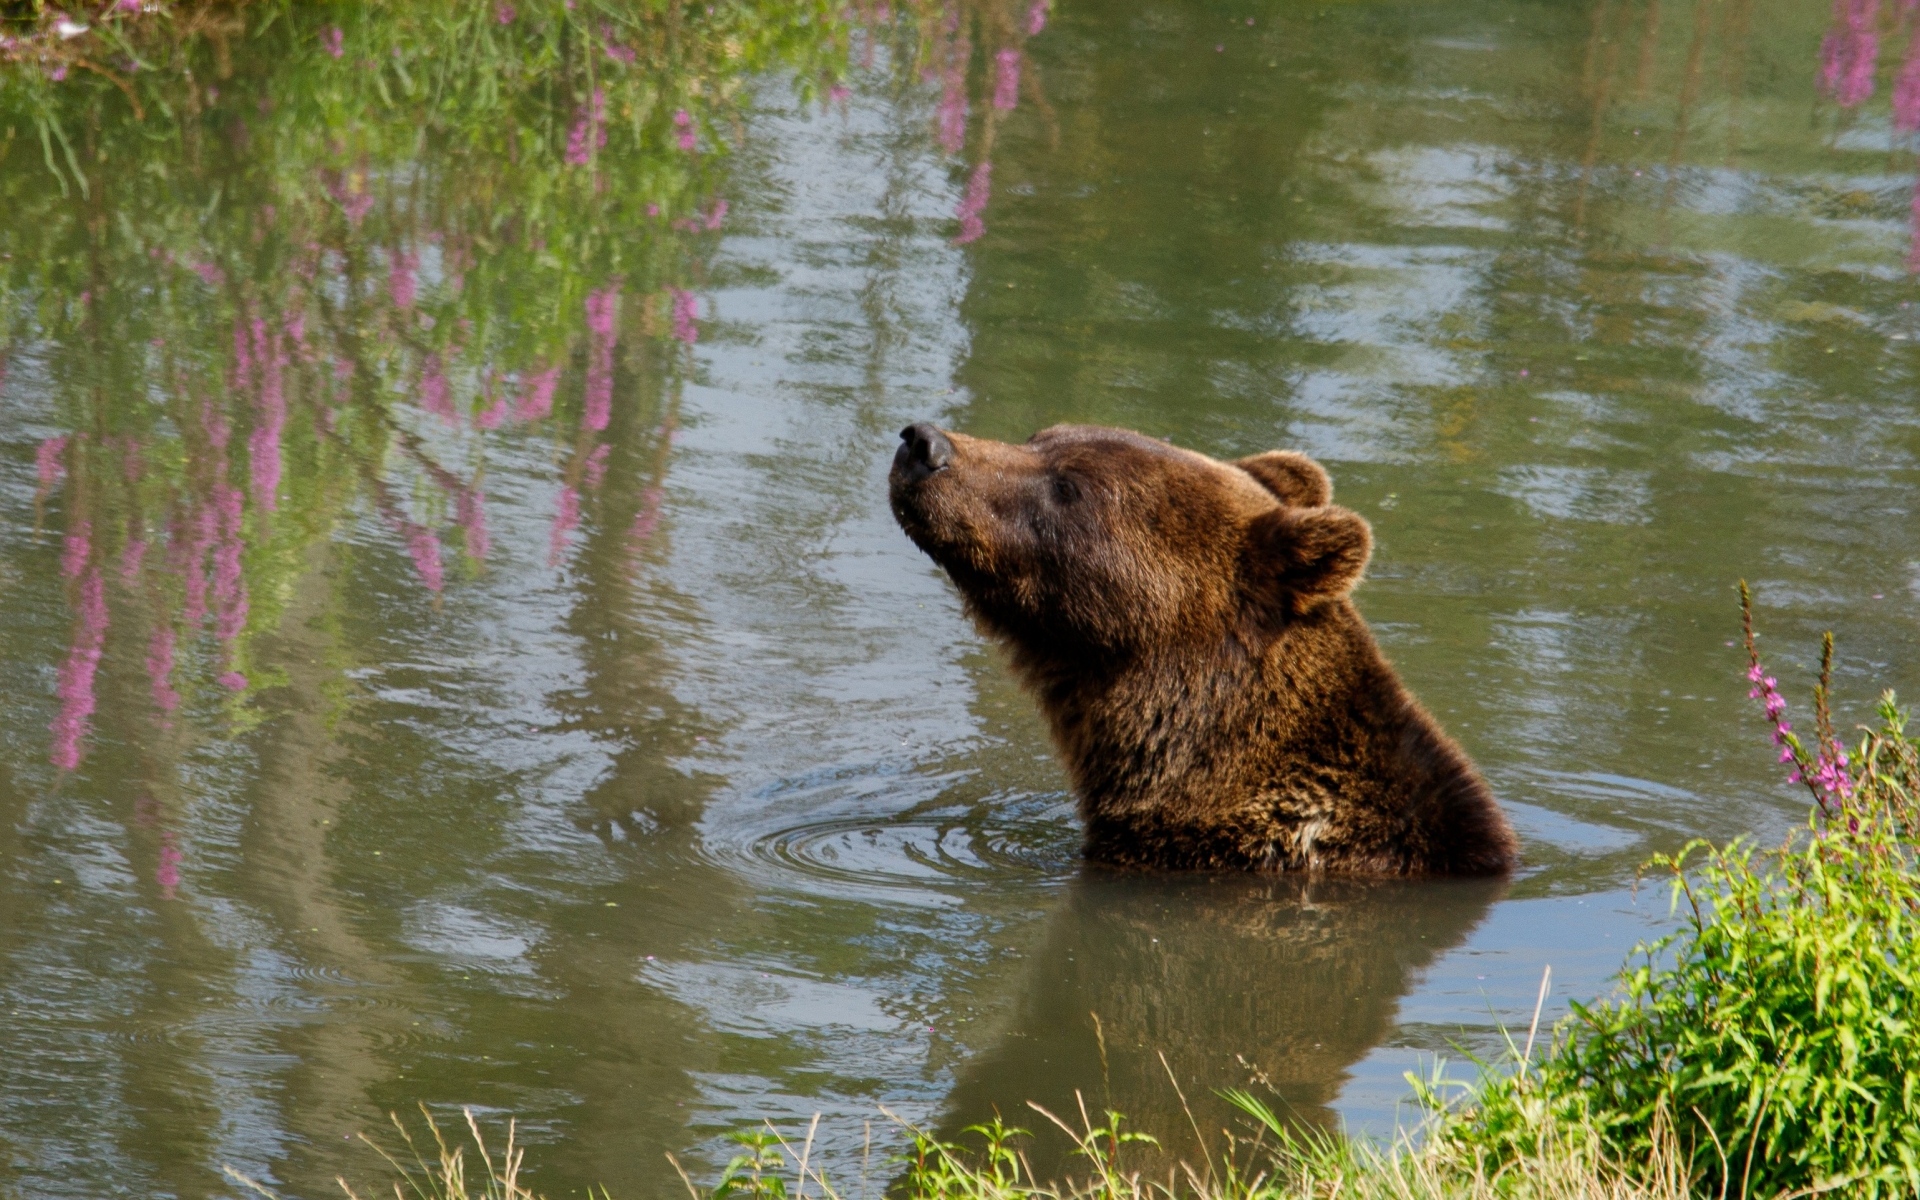 Большой бурый медведь плавает в воде